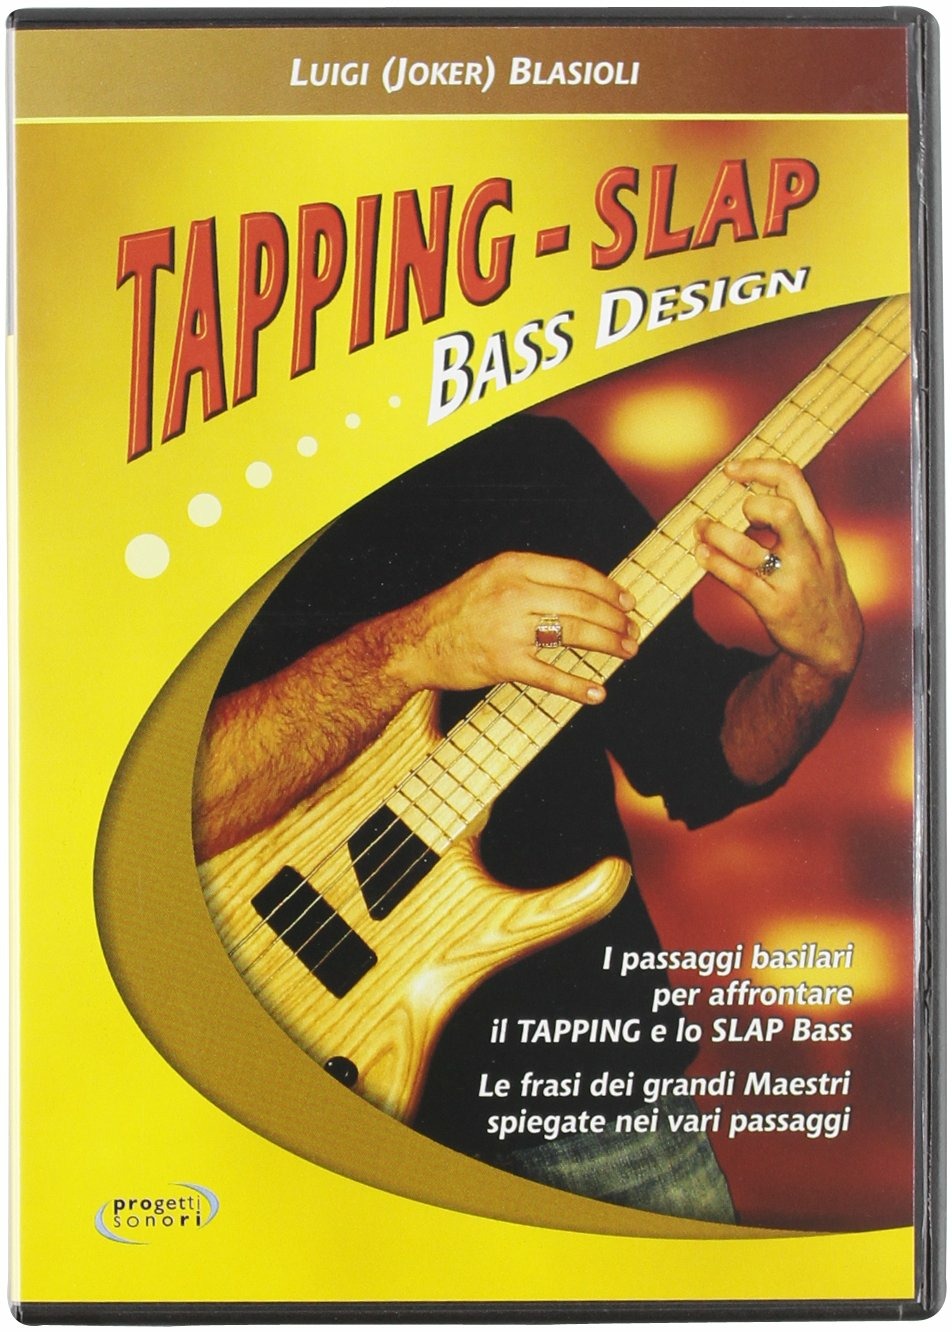 Libri Luigi Blasiotti - Tapping-Slap Bass Design. DVD NUOVO SIGILLATO, EDIZIONE DEL 23/01/2012 SUBITO DISPONIBILE